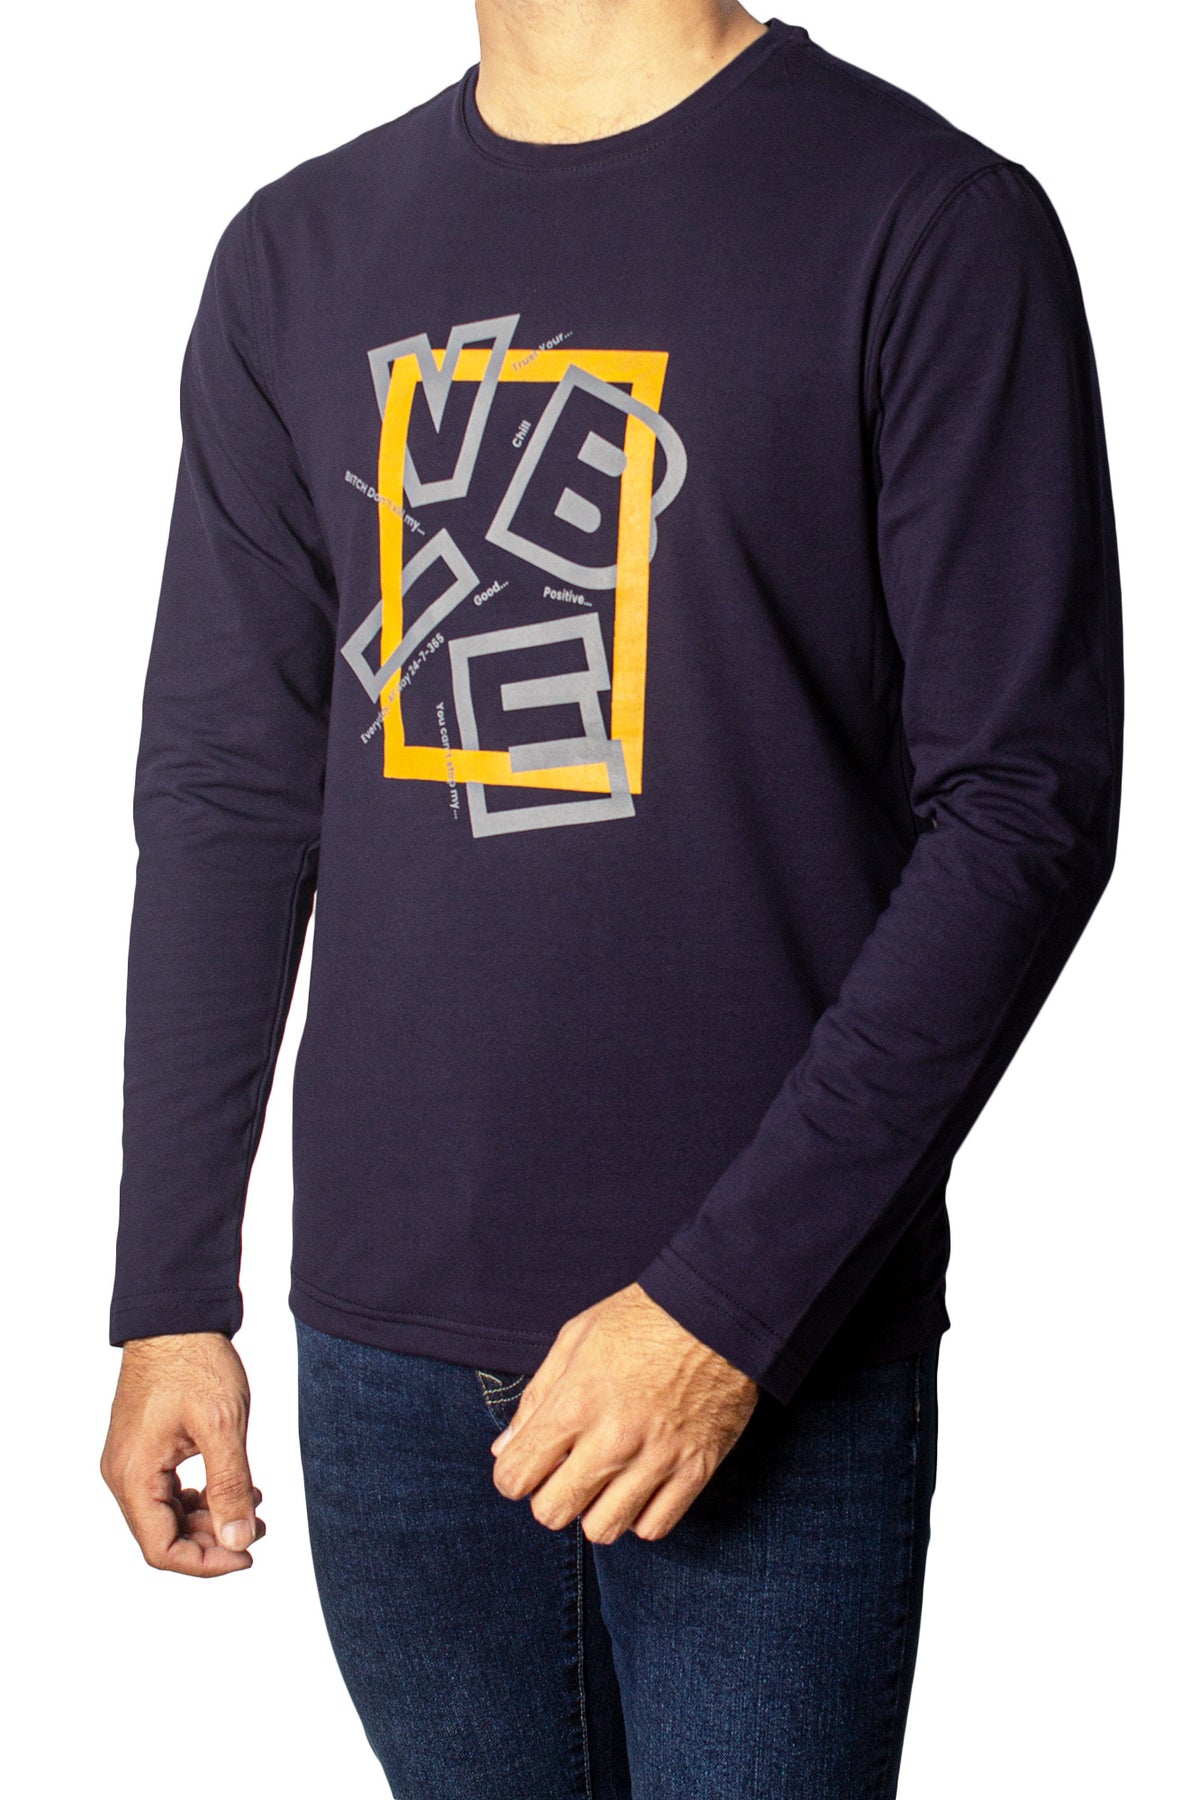 Vibe Printed Full Sleeves T-Shirt Tsh-6843 Navy